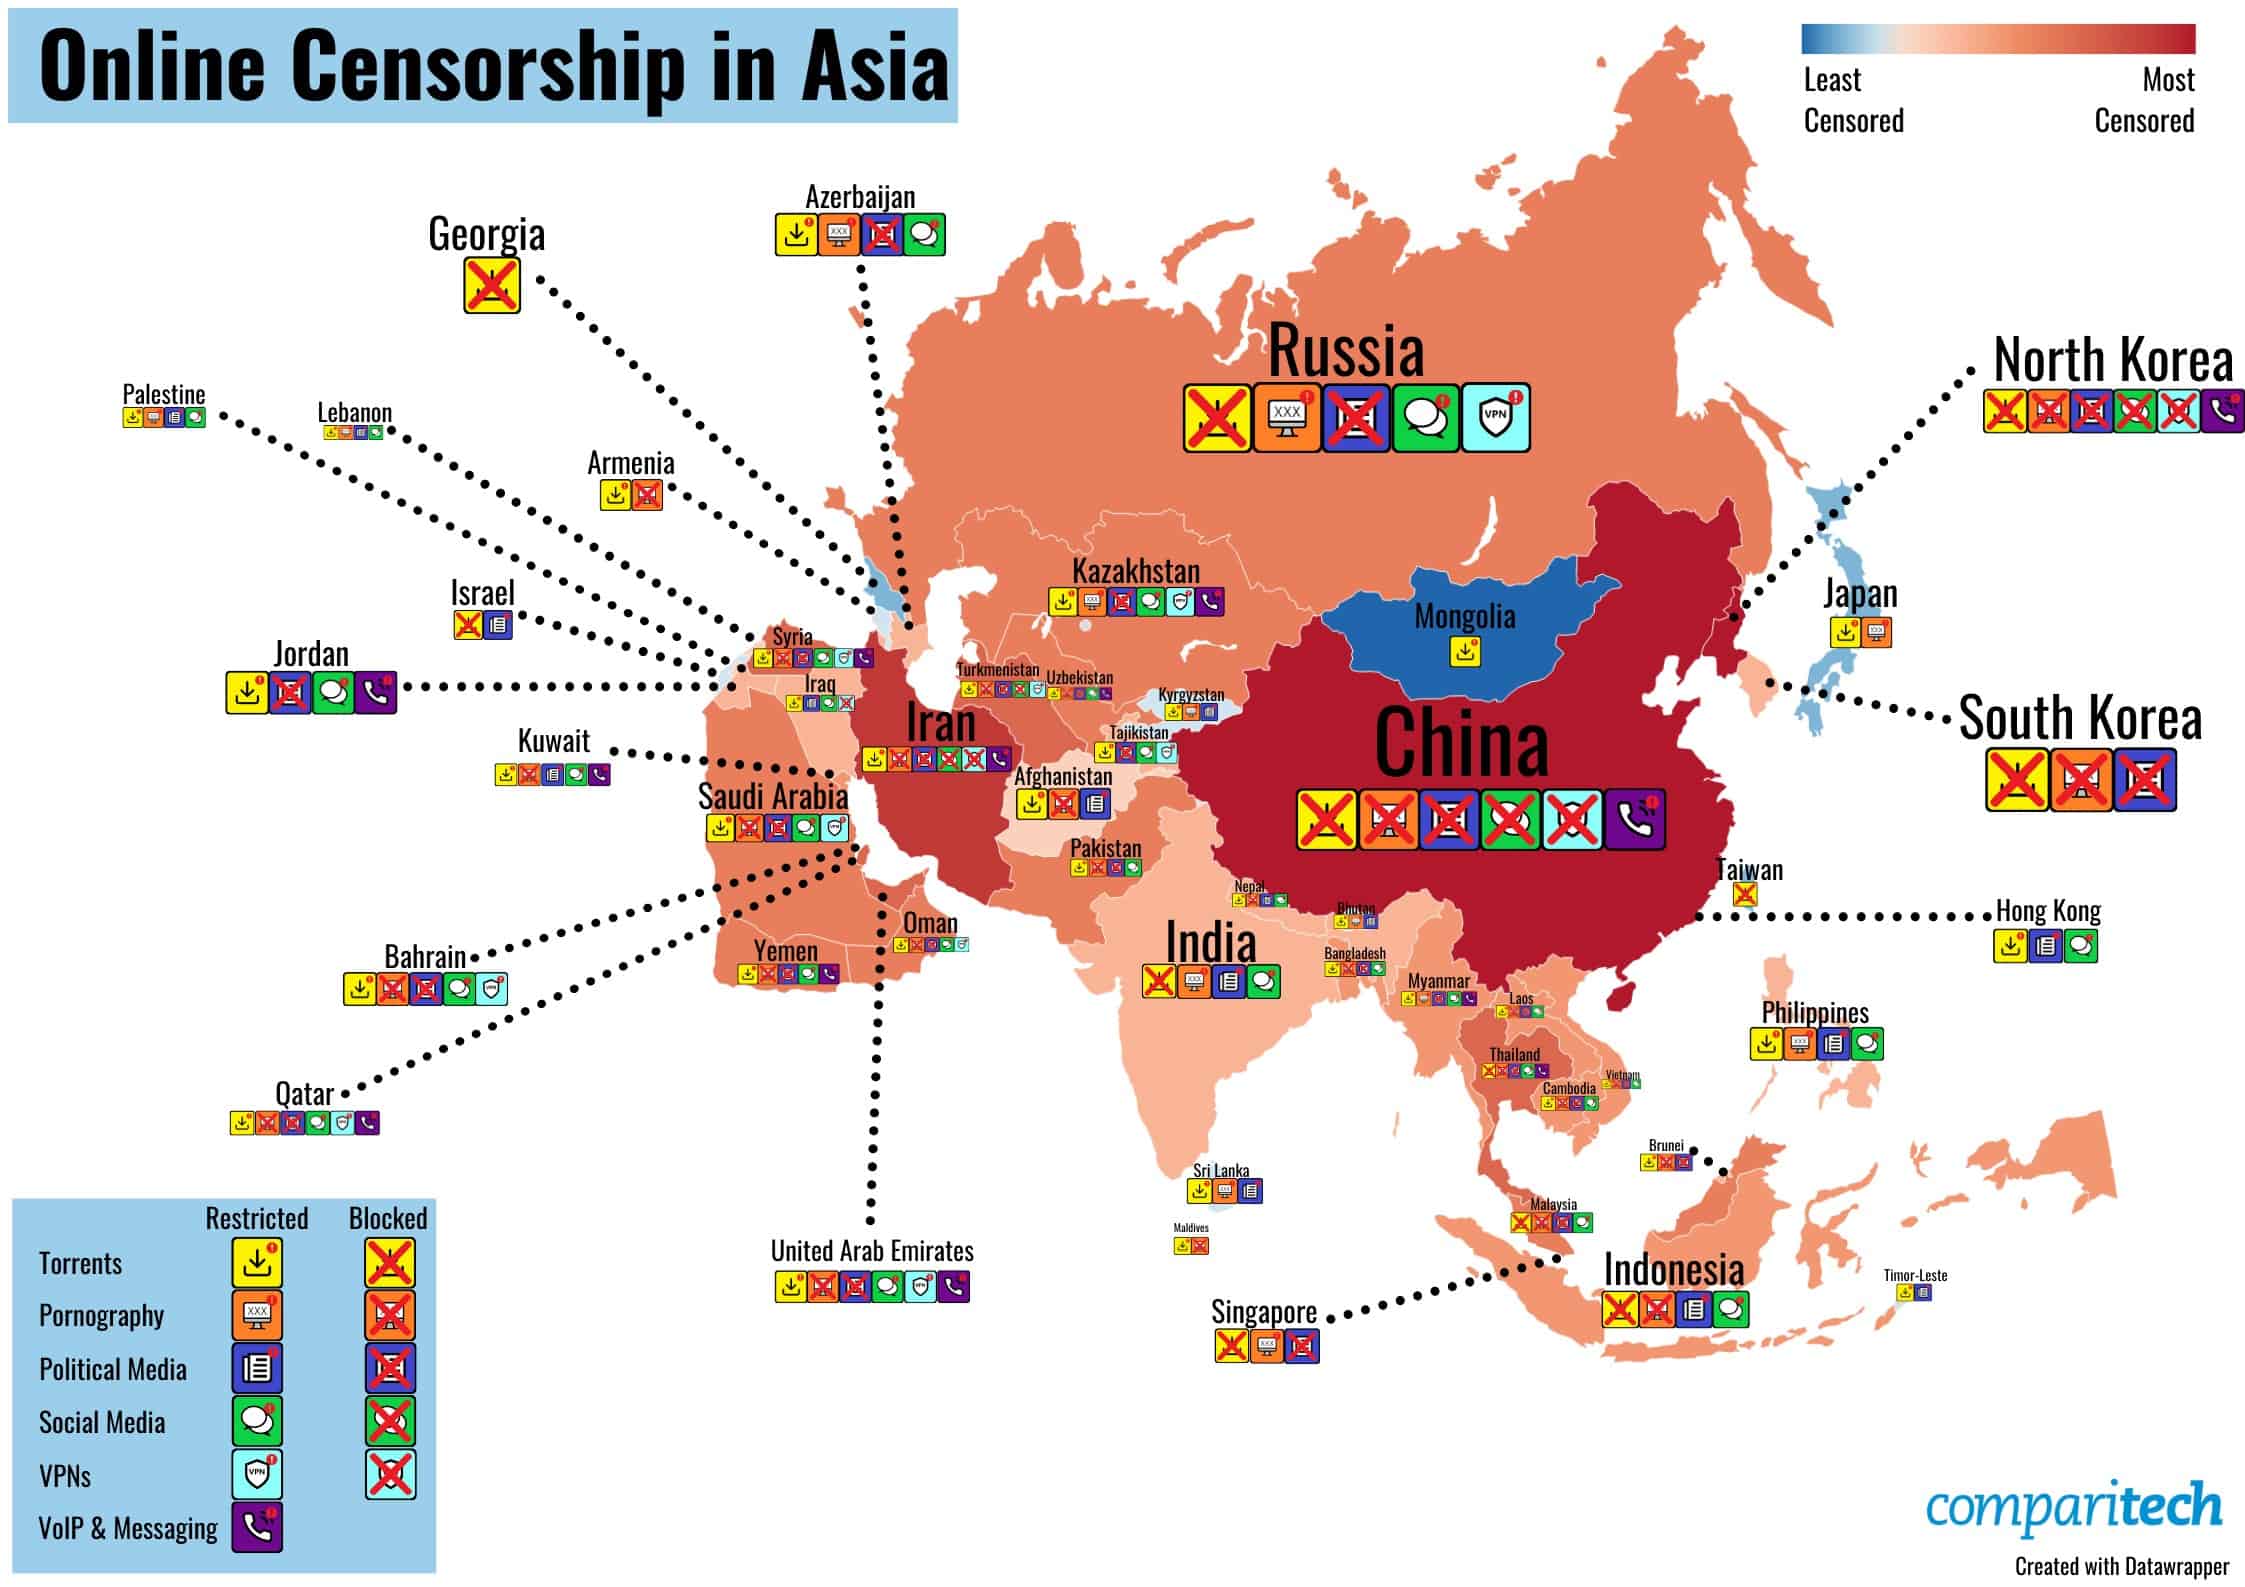 Online censorship in Asia